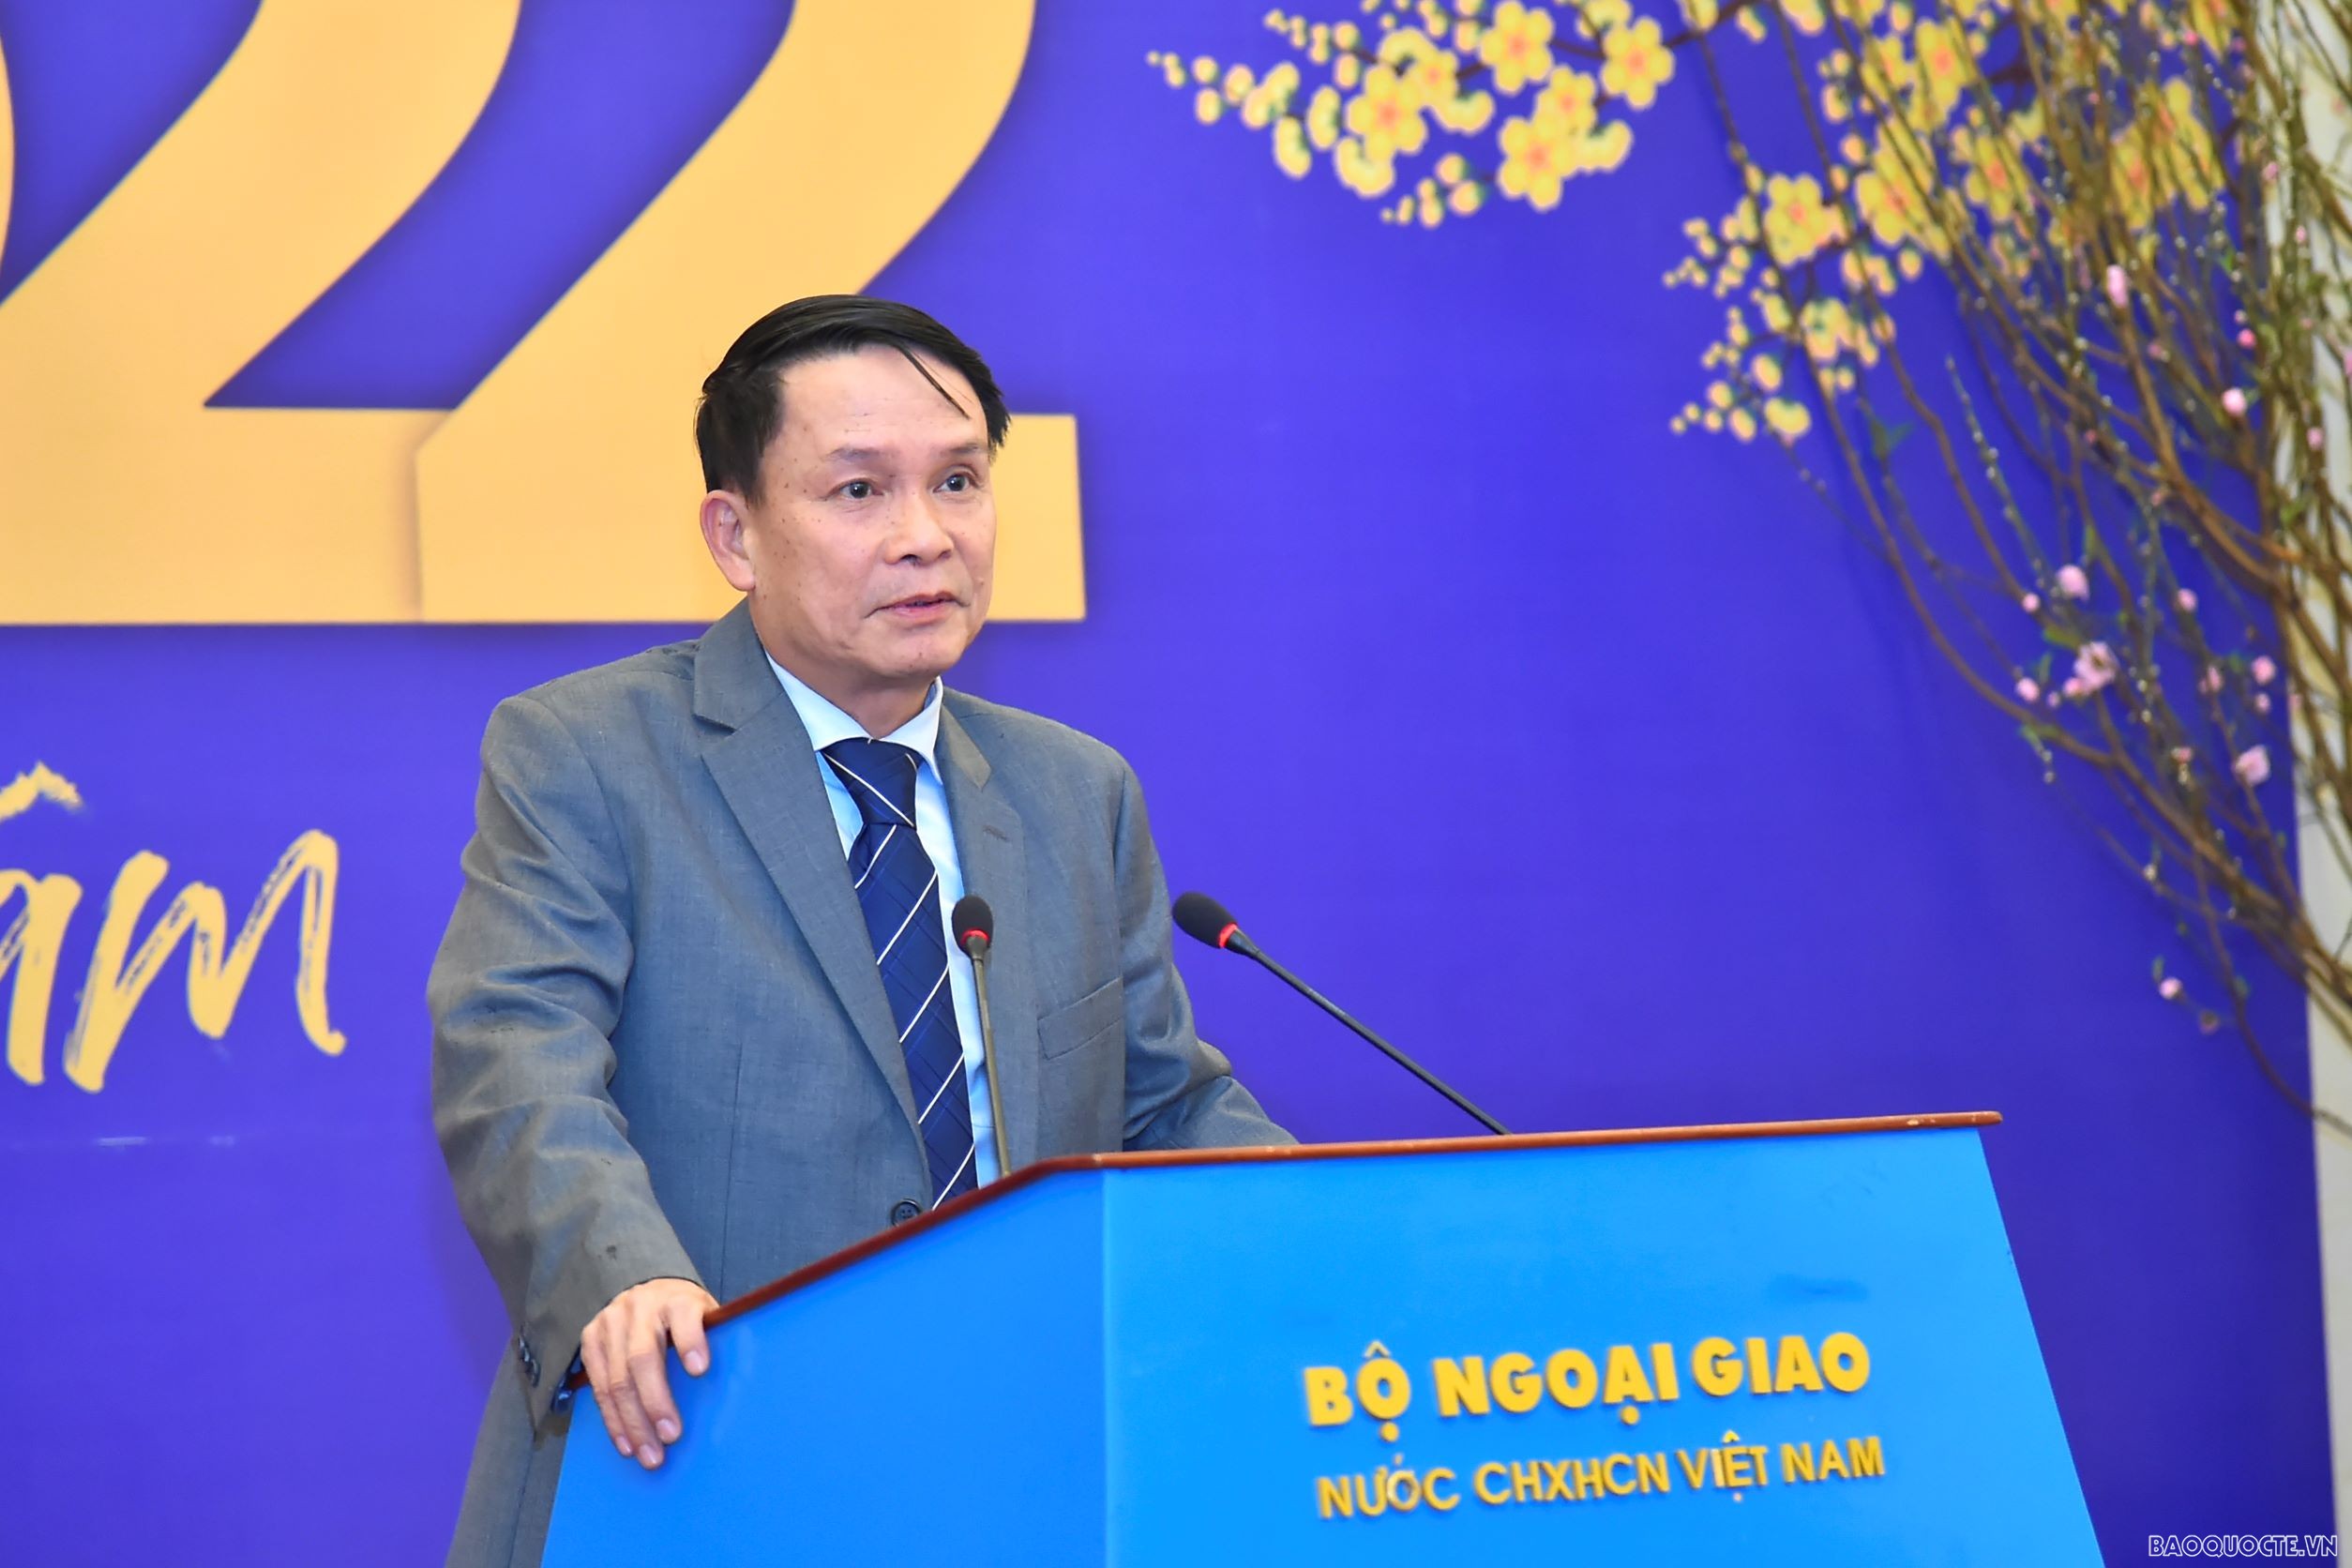 đồng chí Nguyễn Đức Lợi, Phó Chủ tịch thường trực Hội nhà báo Việt Nam